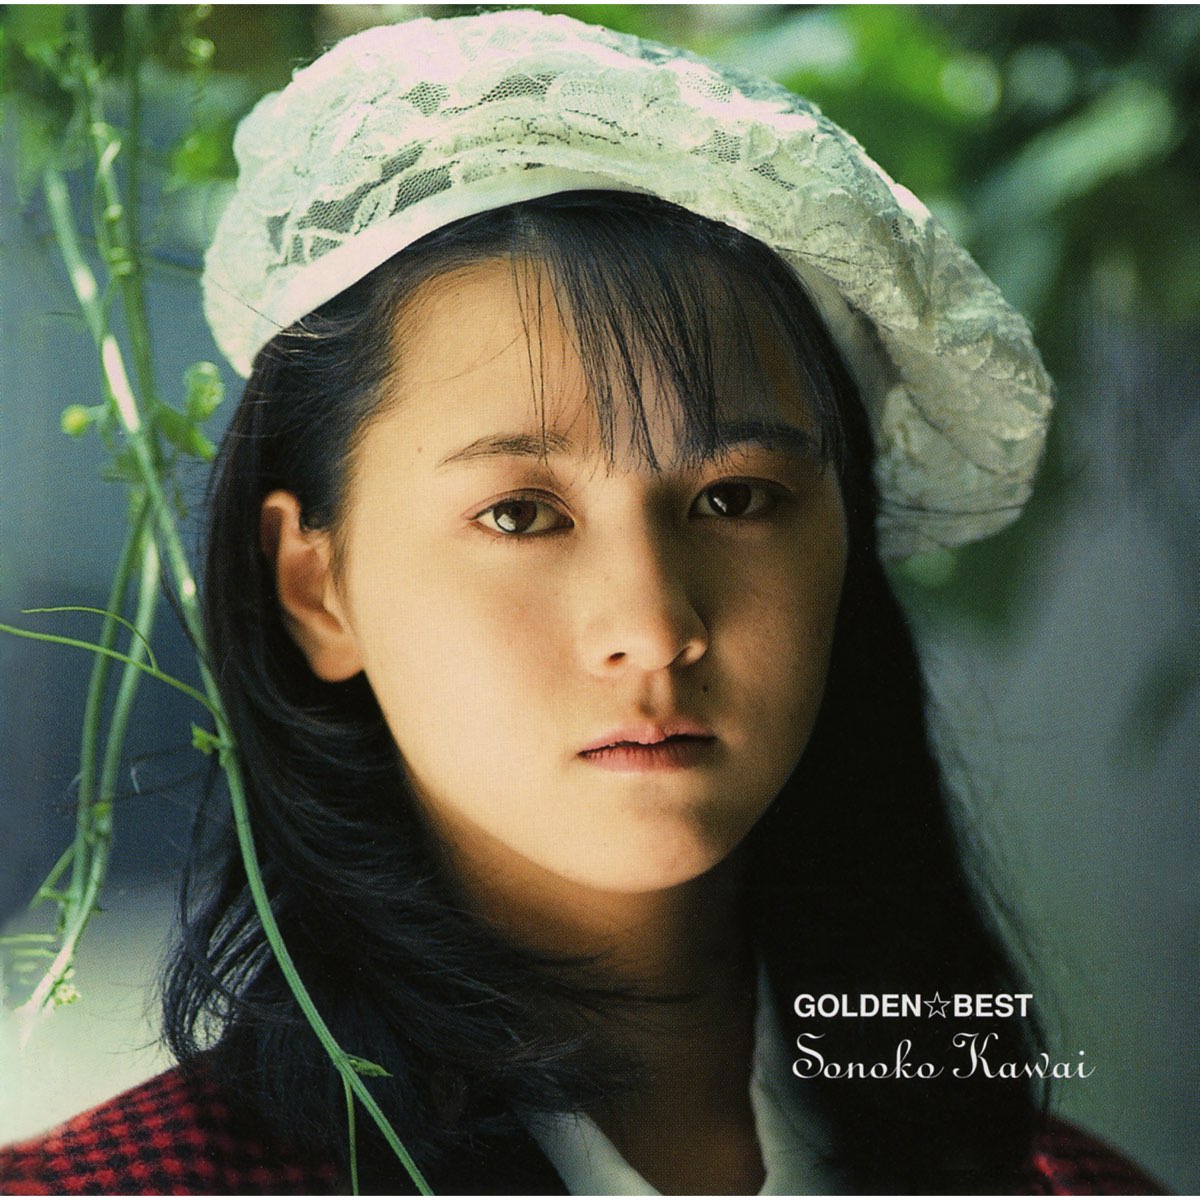 GOLDEN BEST/Sonoko Kawai - Album by 河合 その子 - Apple Music